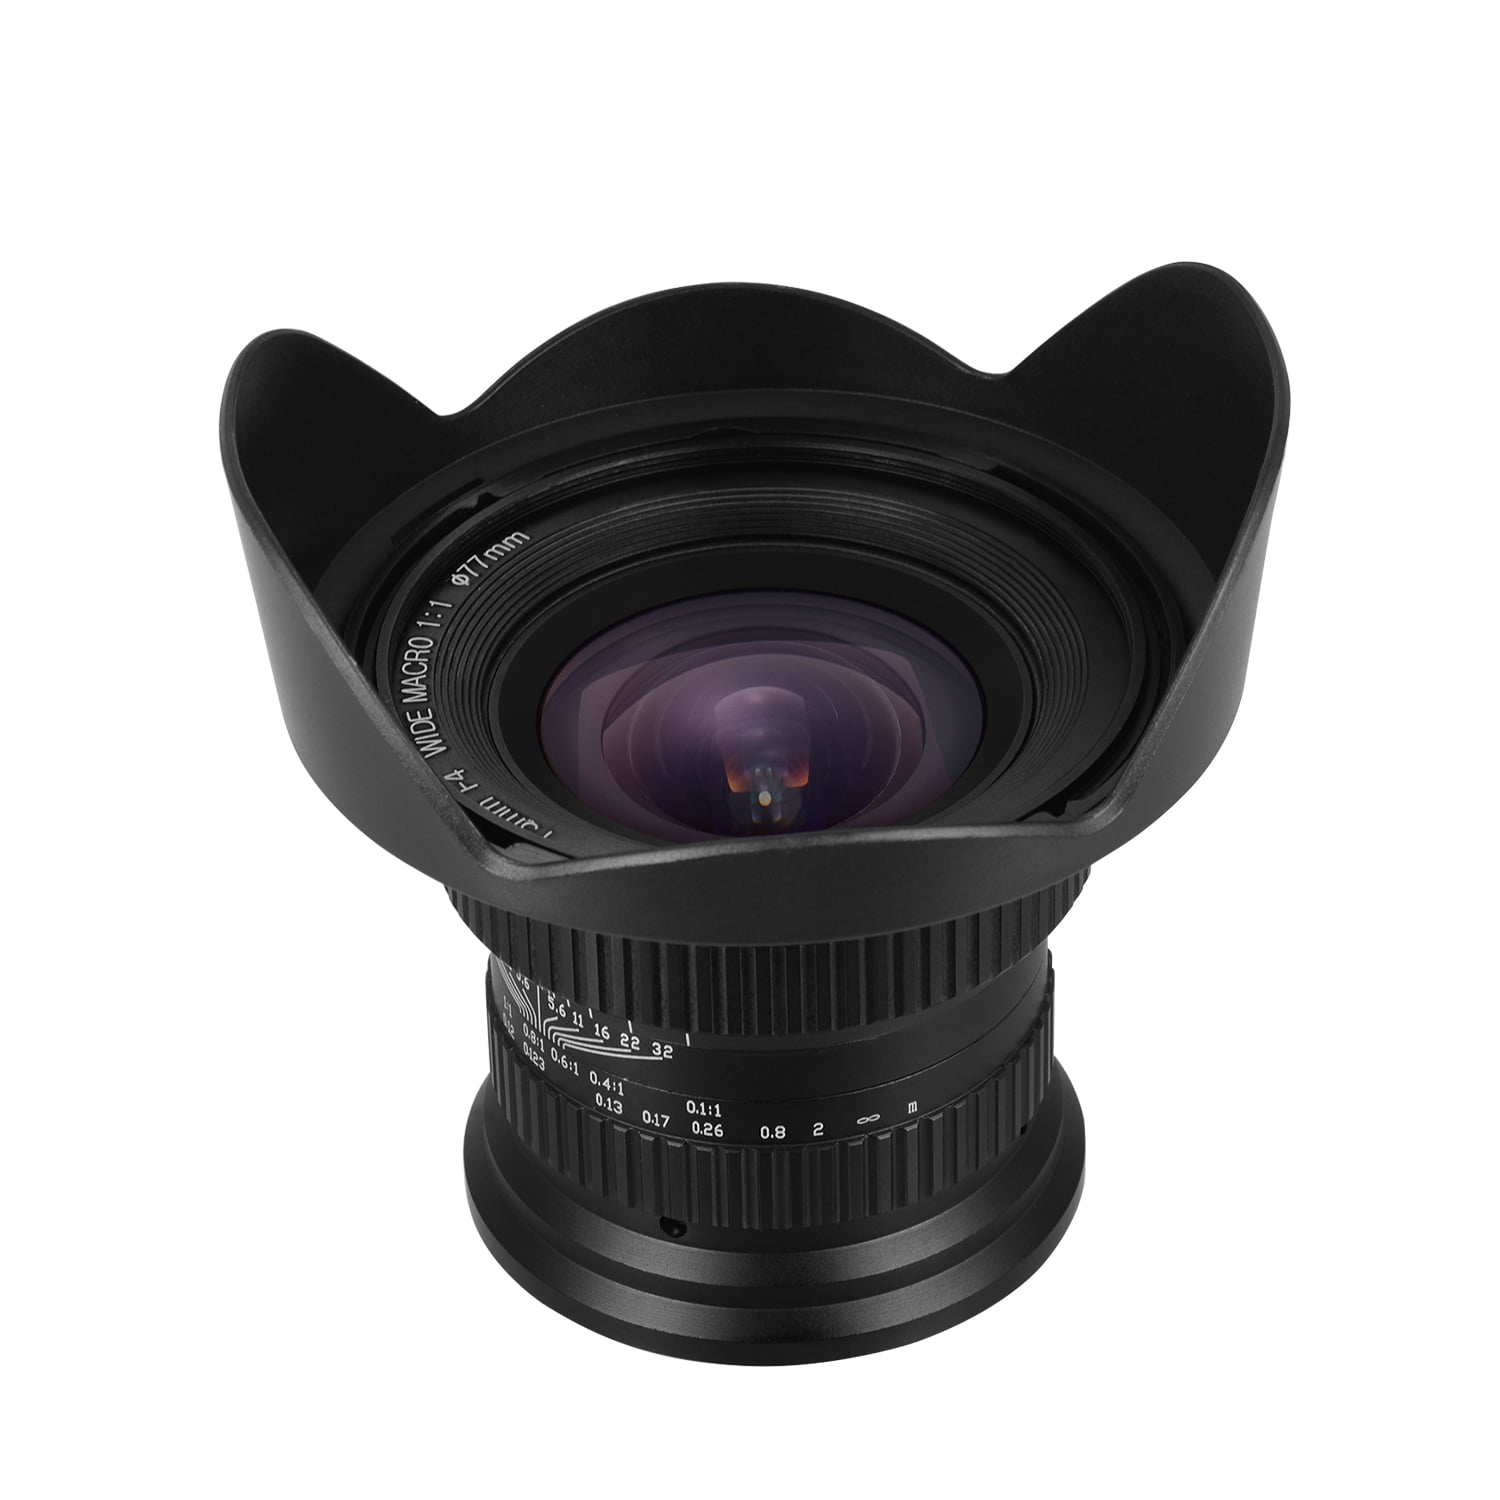 Dan Een bezoek aan grootouders poeder 15mm f4.0 Macro Lens 120 Degree Wide Angle for Full Frame/APS-C Compatible  with Nikon D7100/D7200/D90/D600/D3000/D5000/D40/D50/D300/D200 - Walmart.com